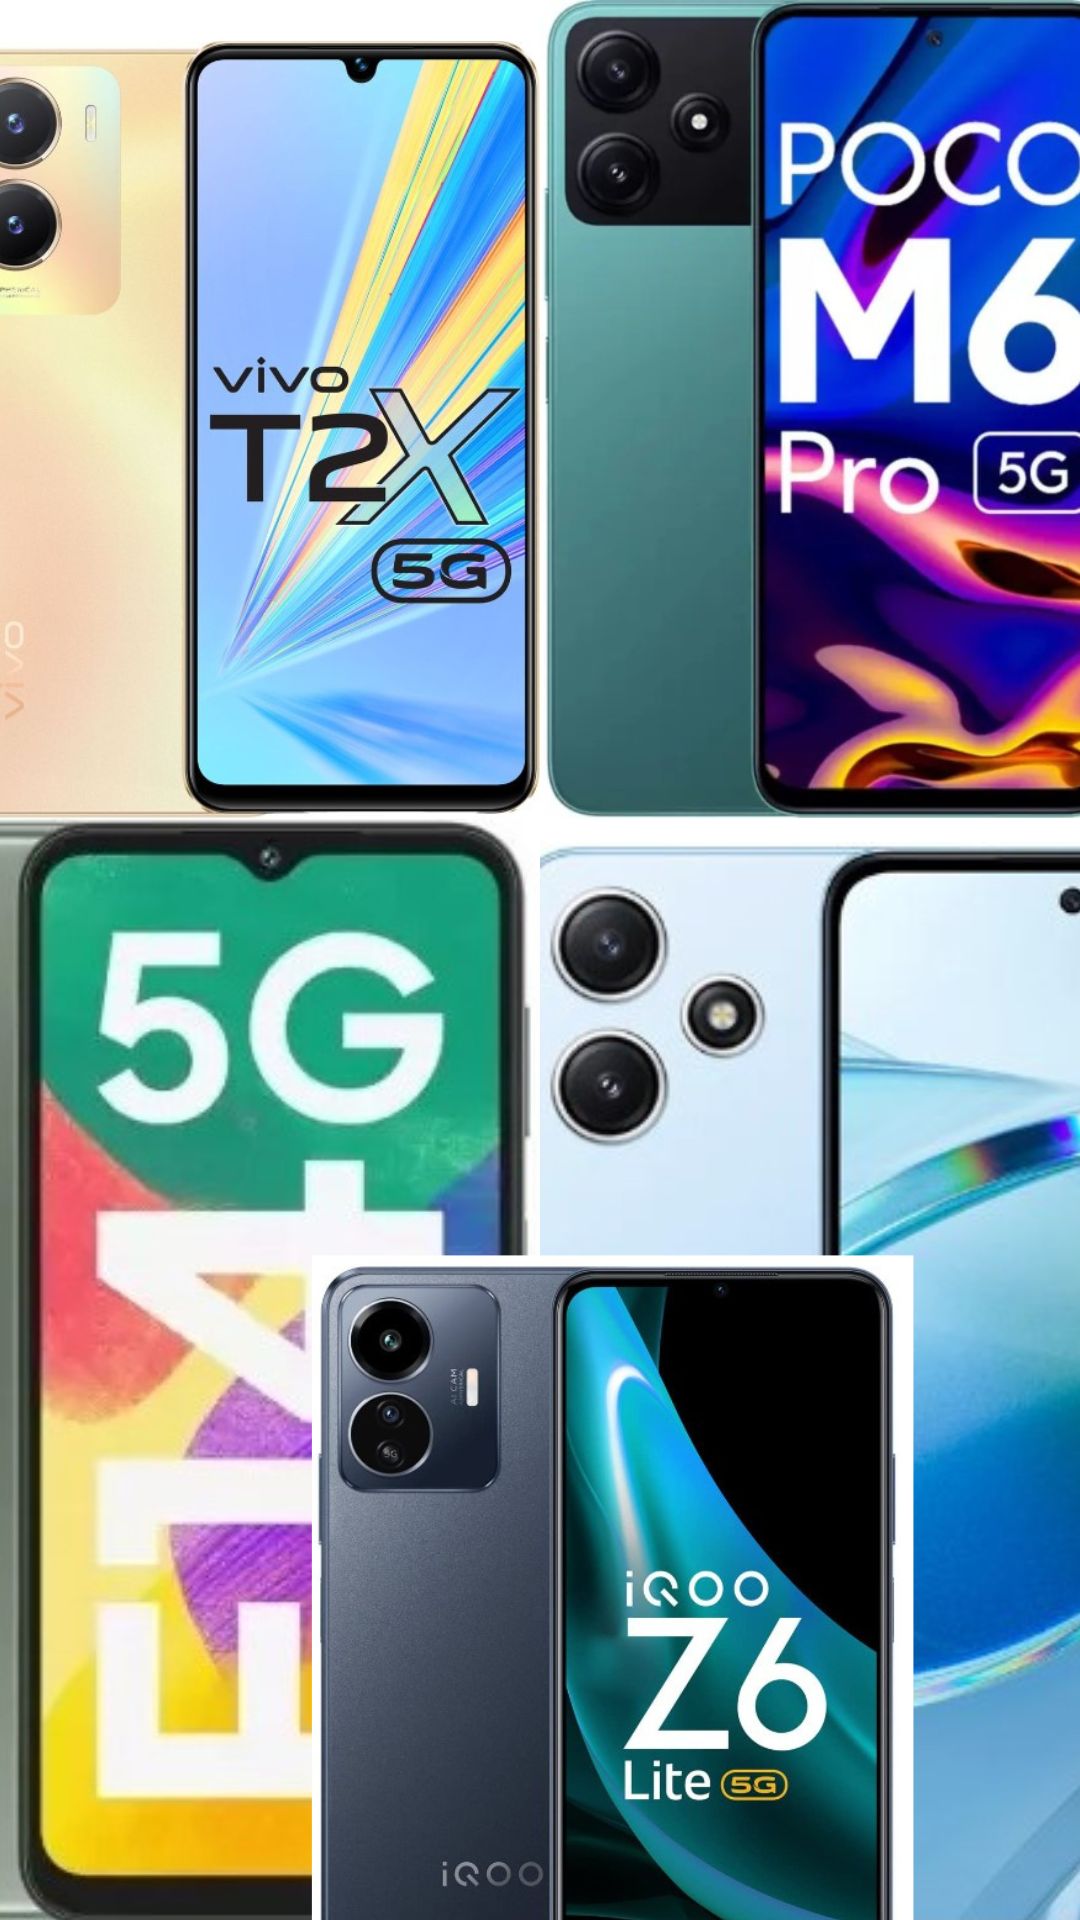 5G smartphones under Rs 15,000: Top picks

